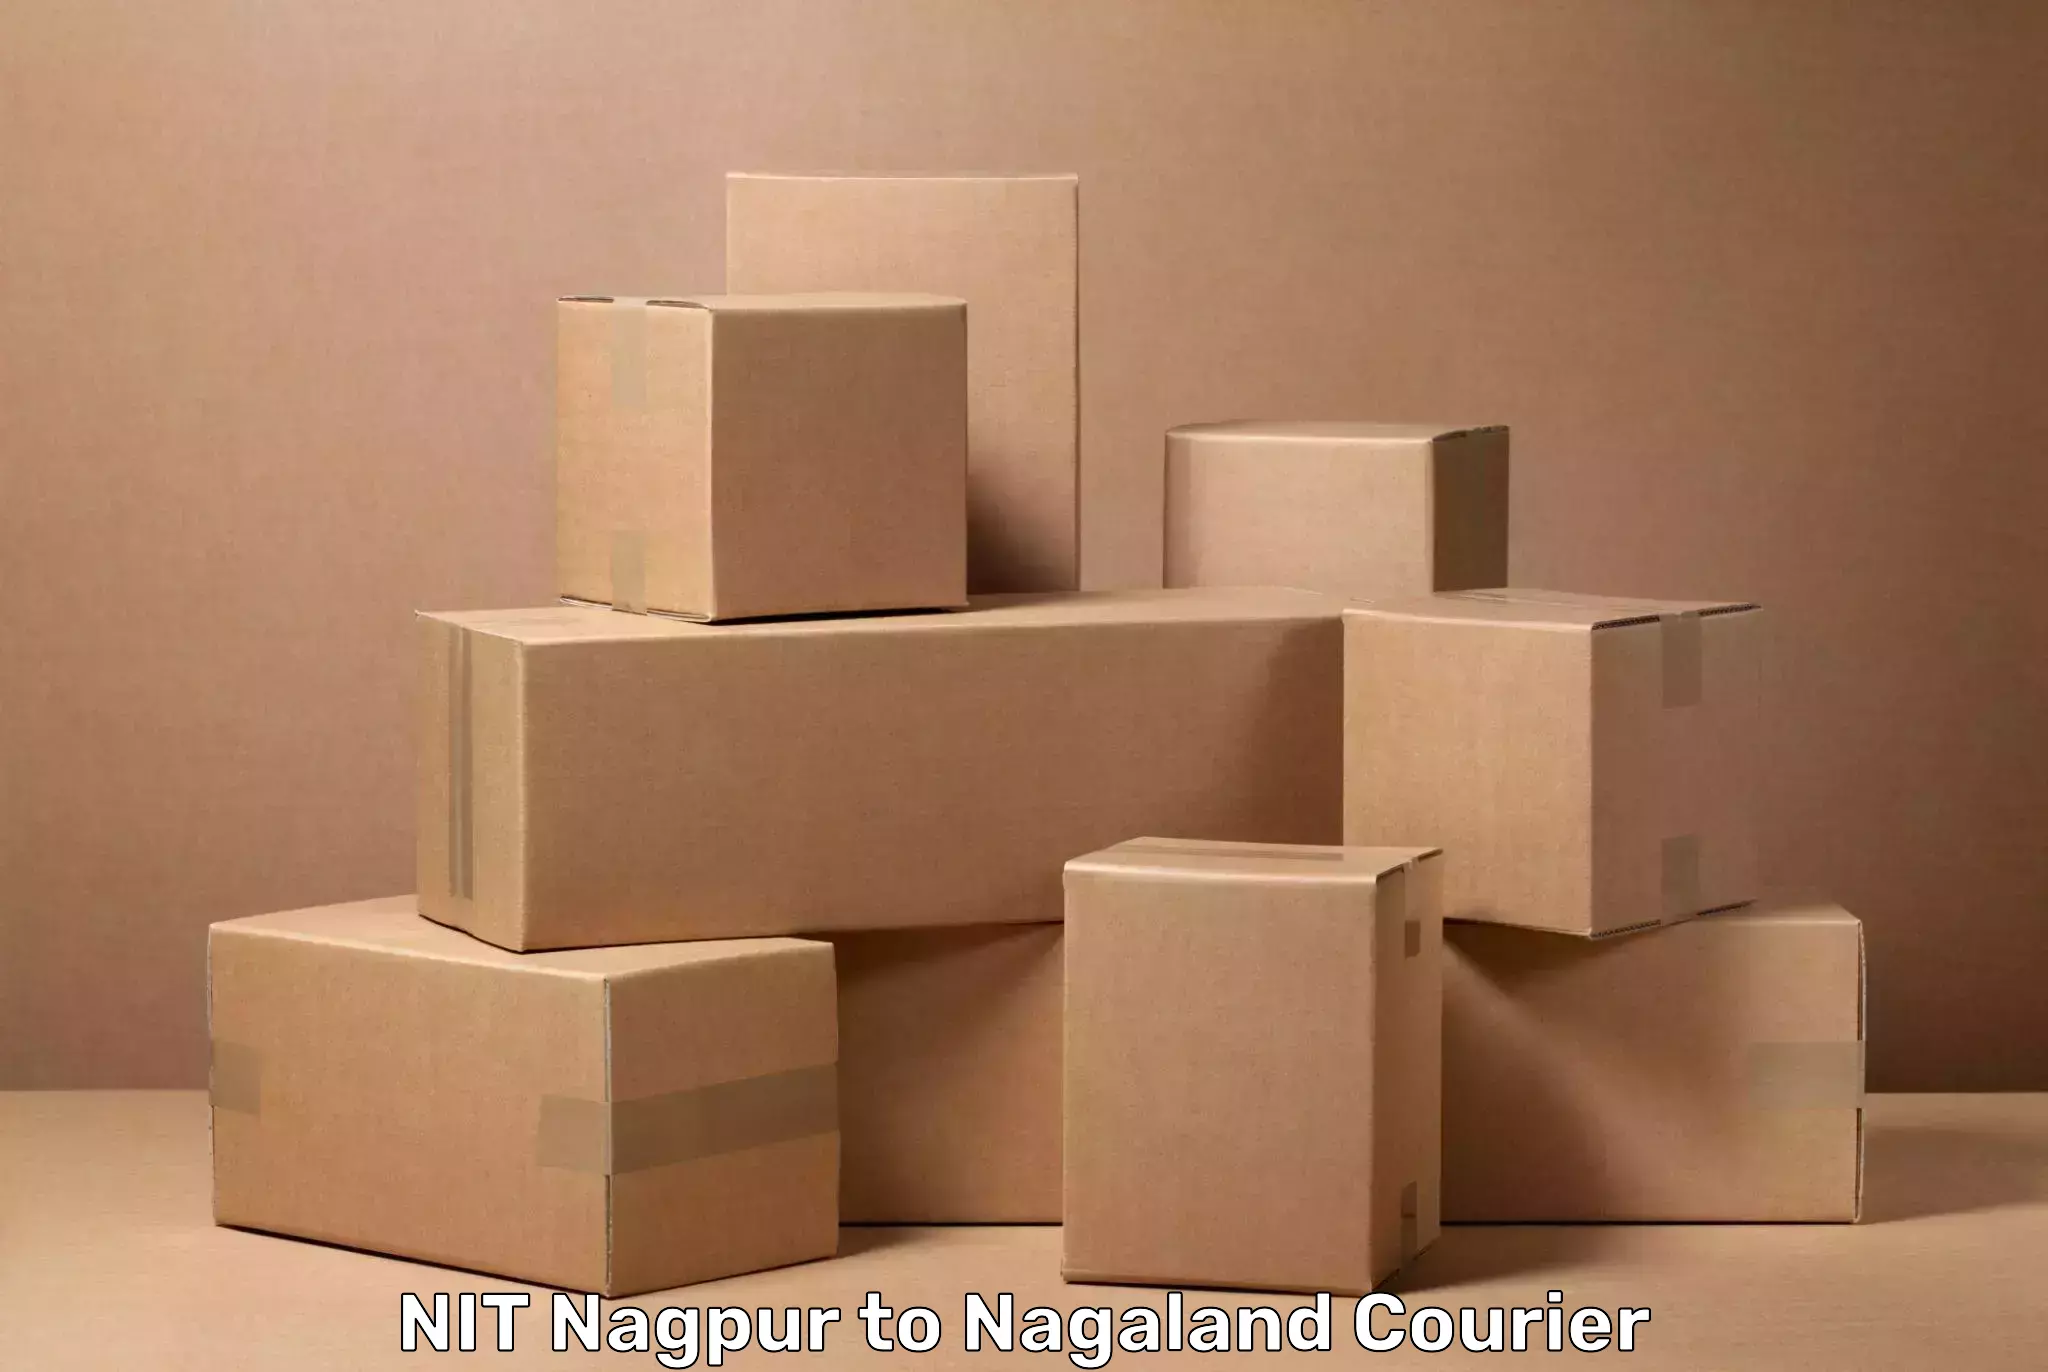 Baggage transport scheduler NIT Nagpur to Dimapur